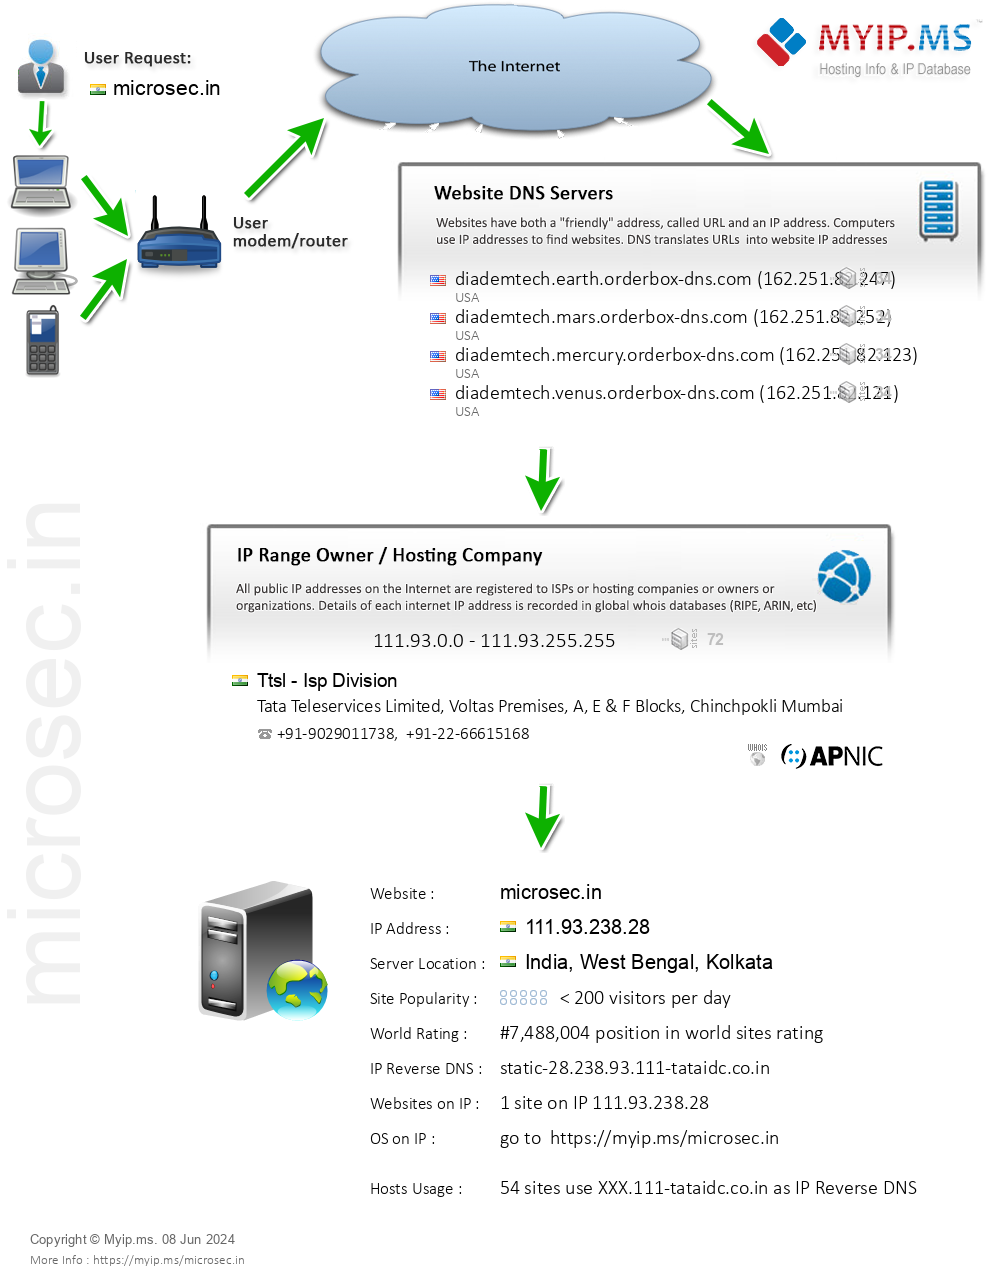 Microsec.in - Website Hosting Visual IP Diagram